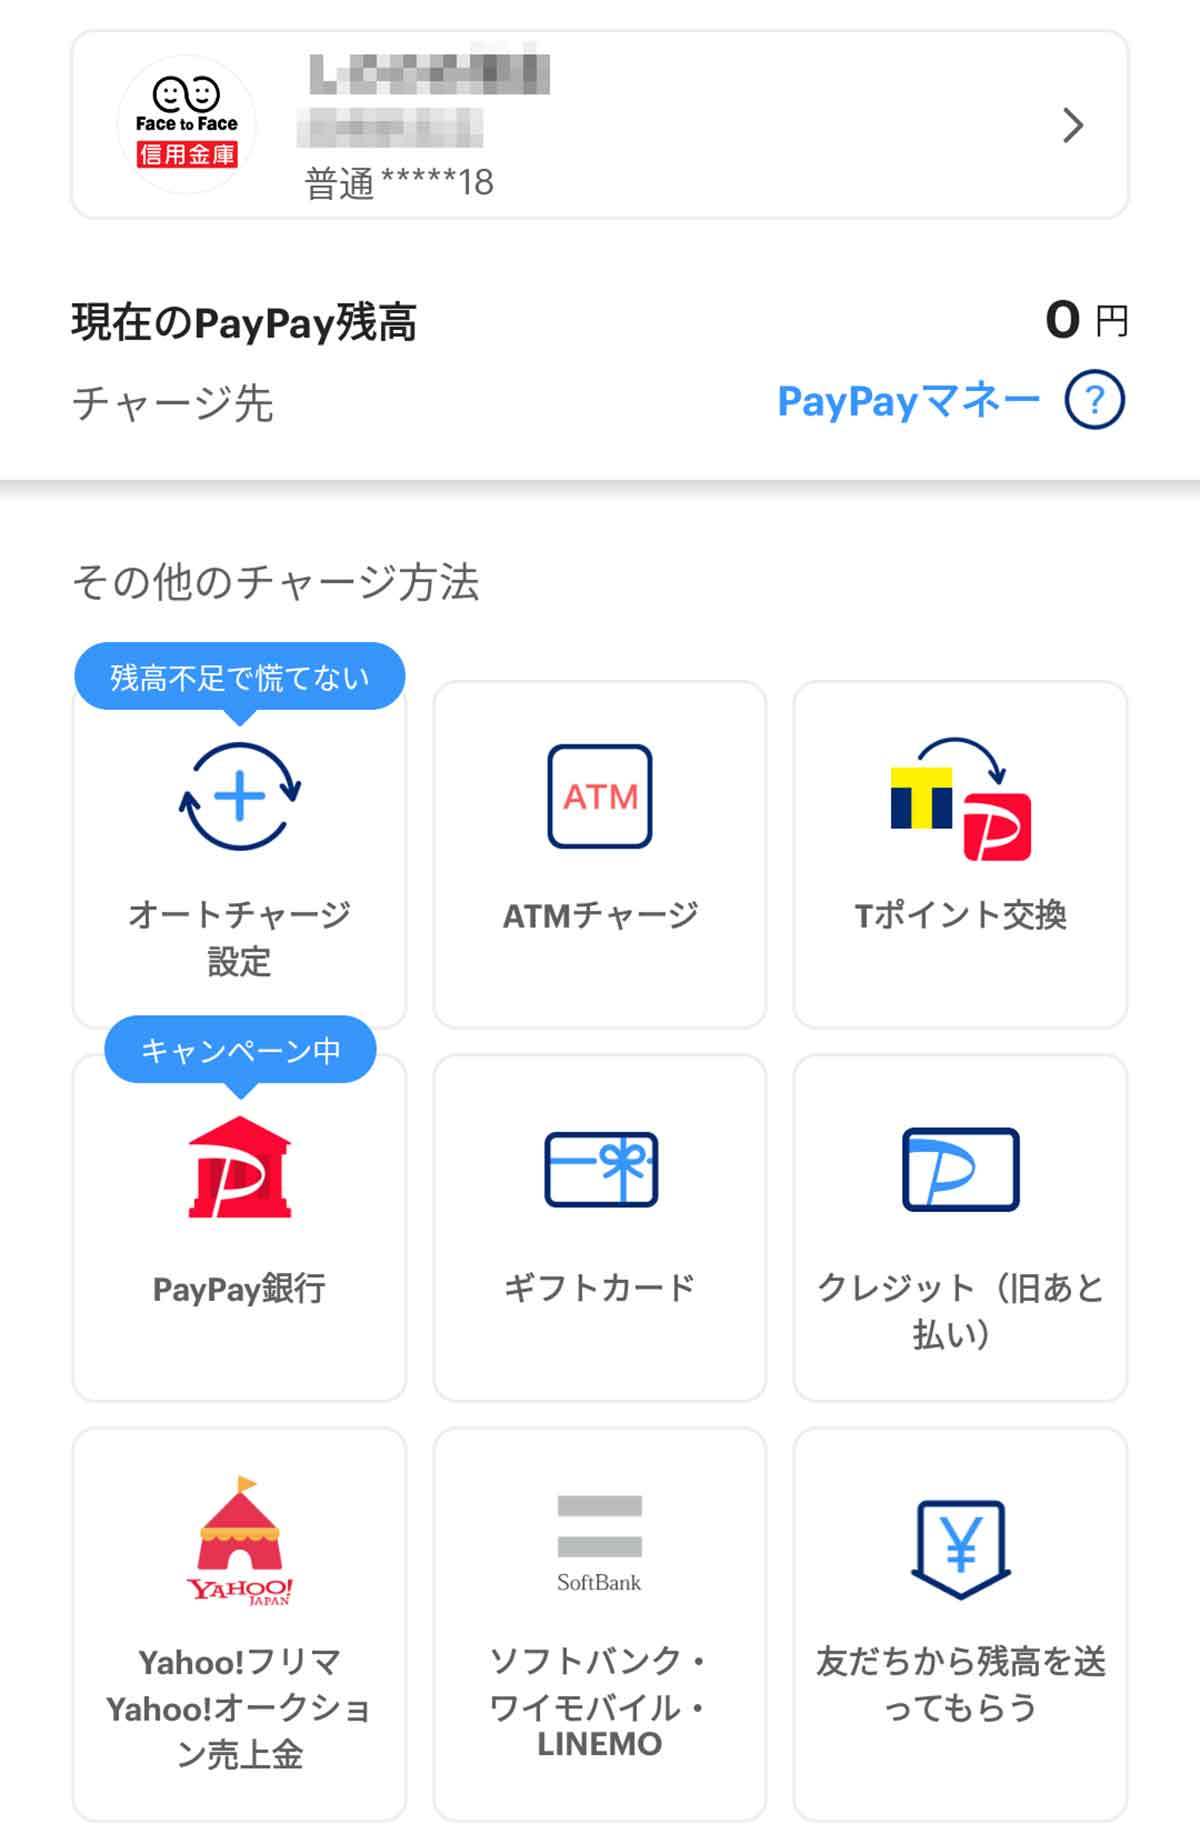 PayPay（ペイペイ）のチャージ方法一覧とより便利にチャージするコツ、活用術